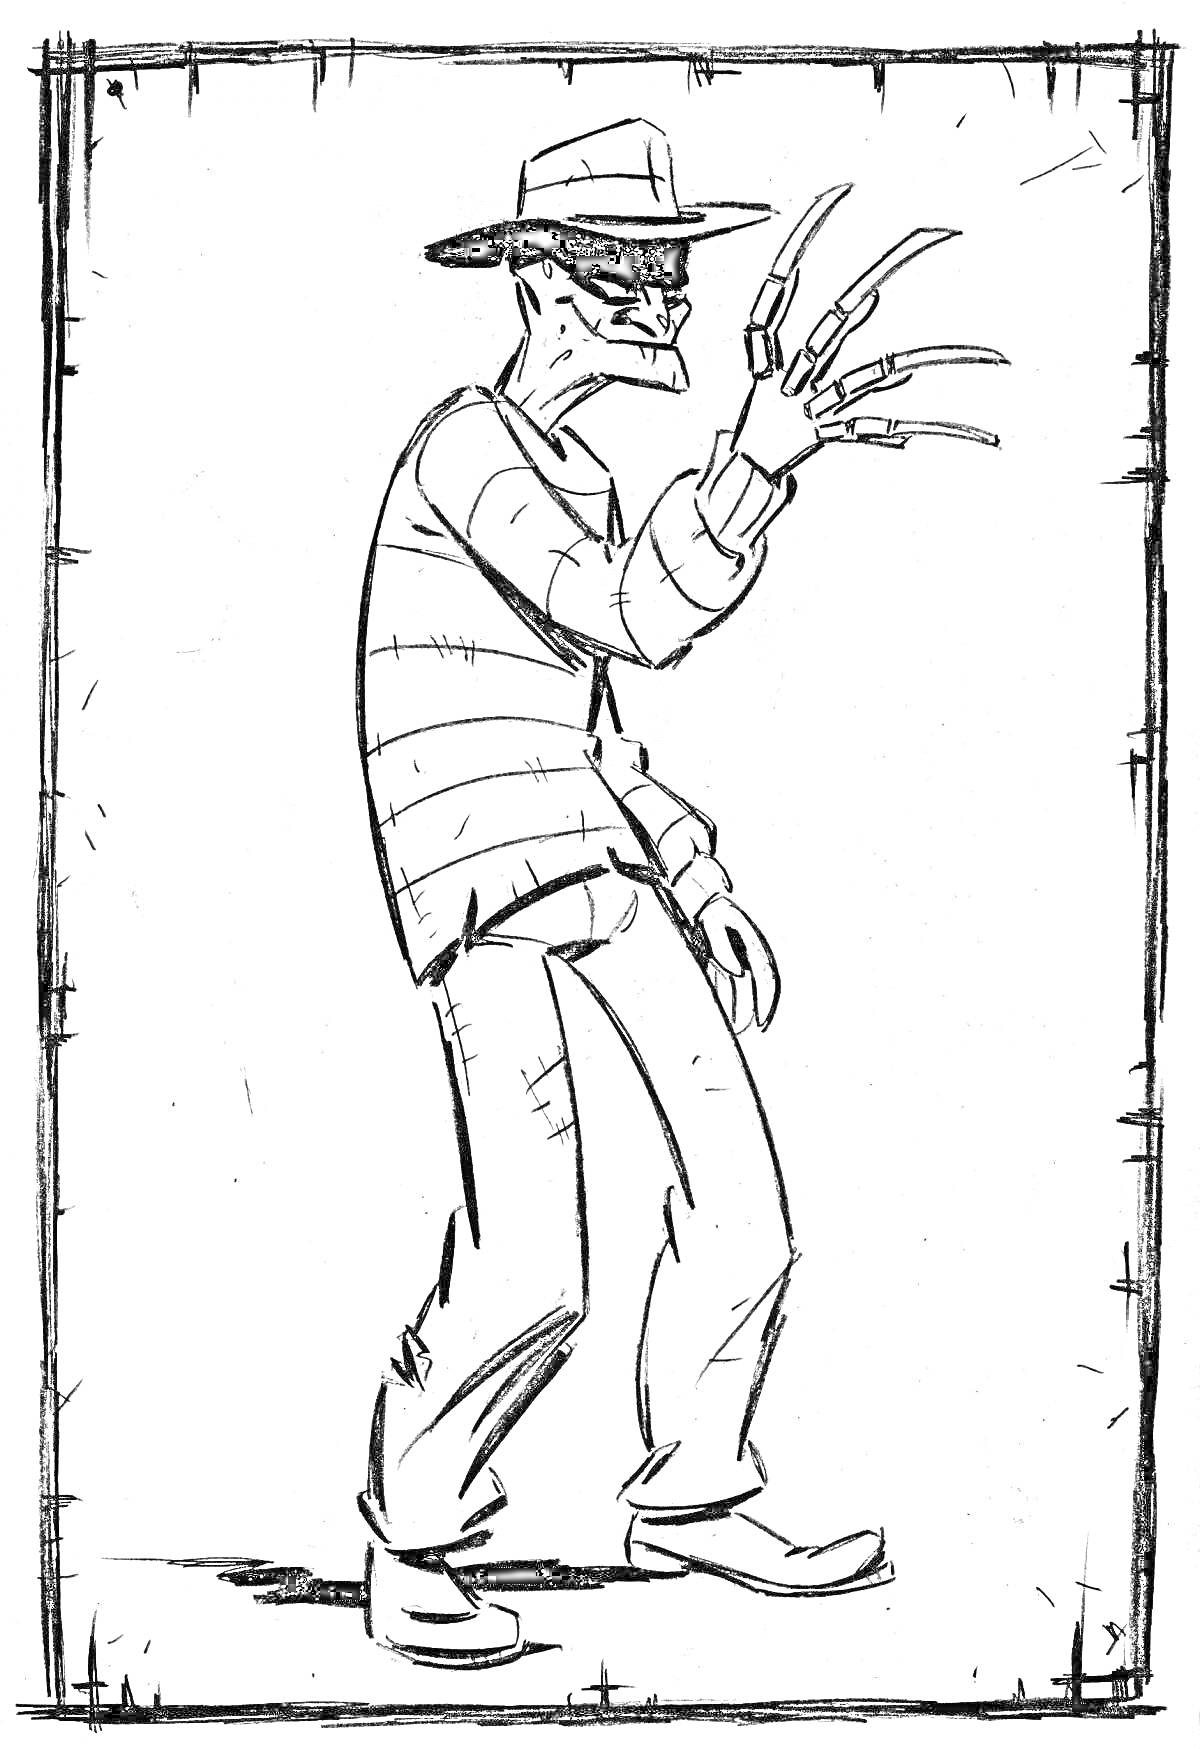 Фредди Крюгер в широкополой шляпе и полосатом свитере, с когтями на правой руке